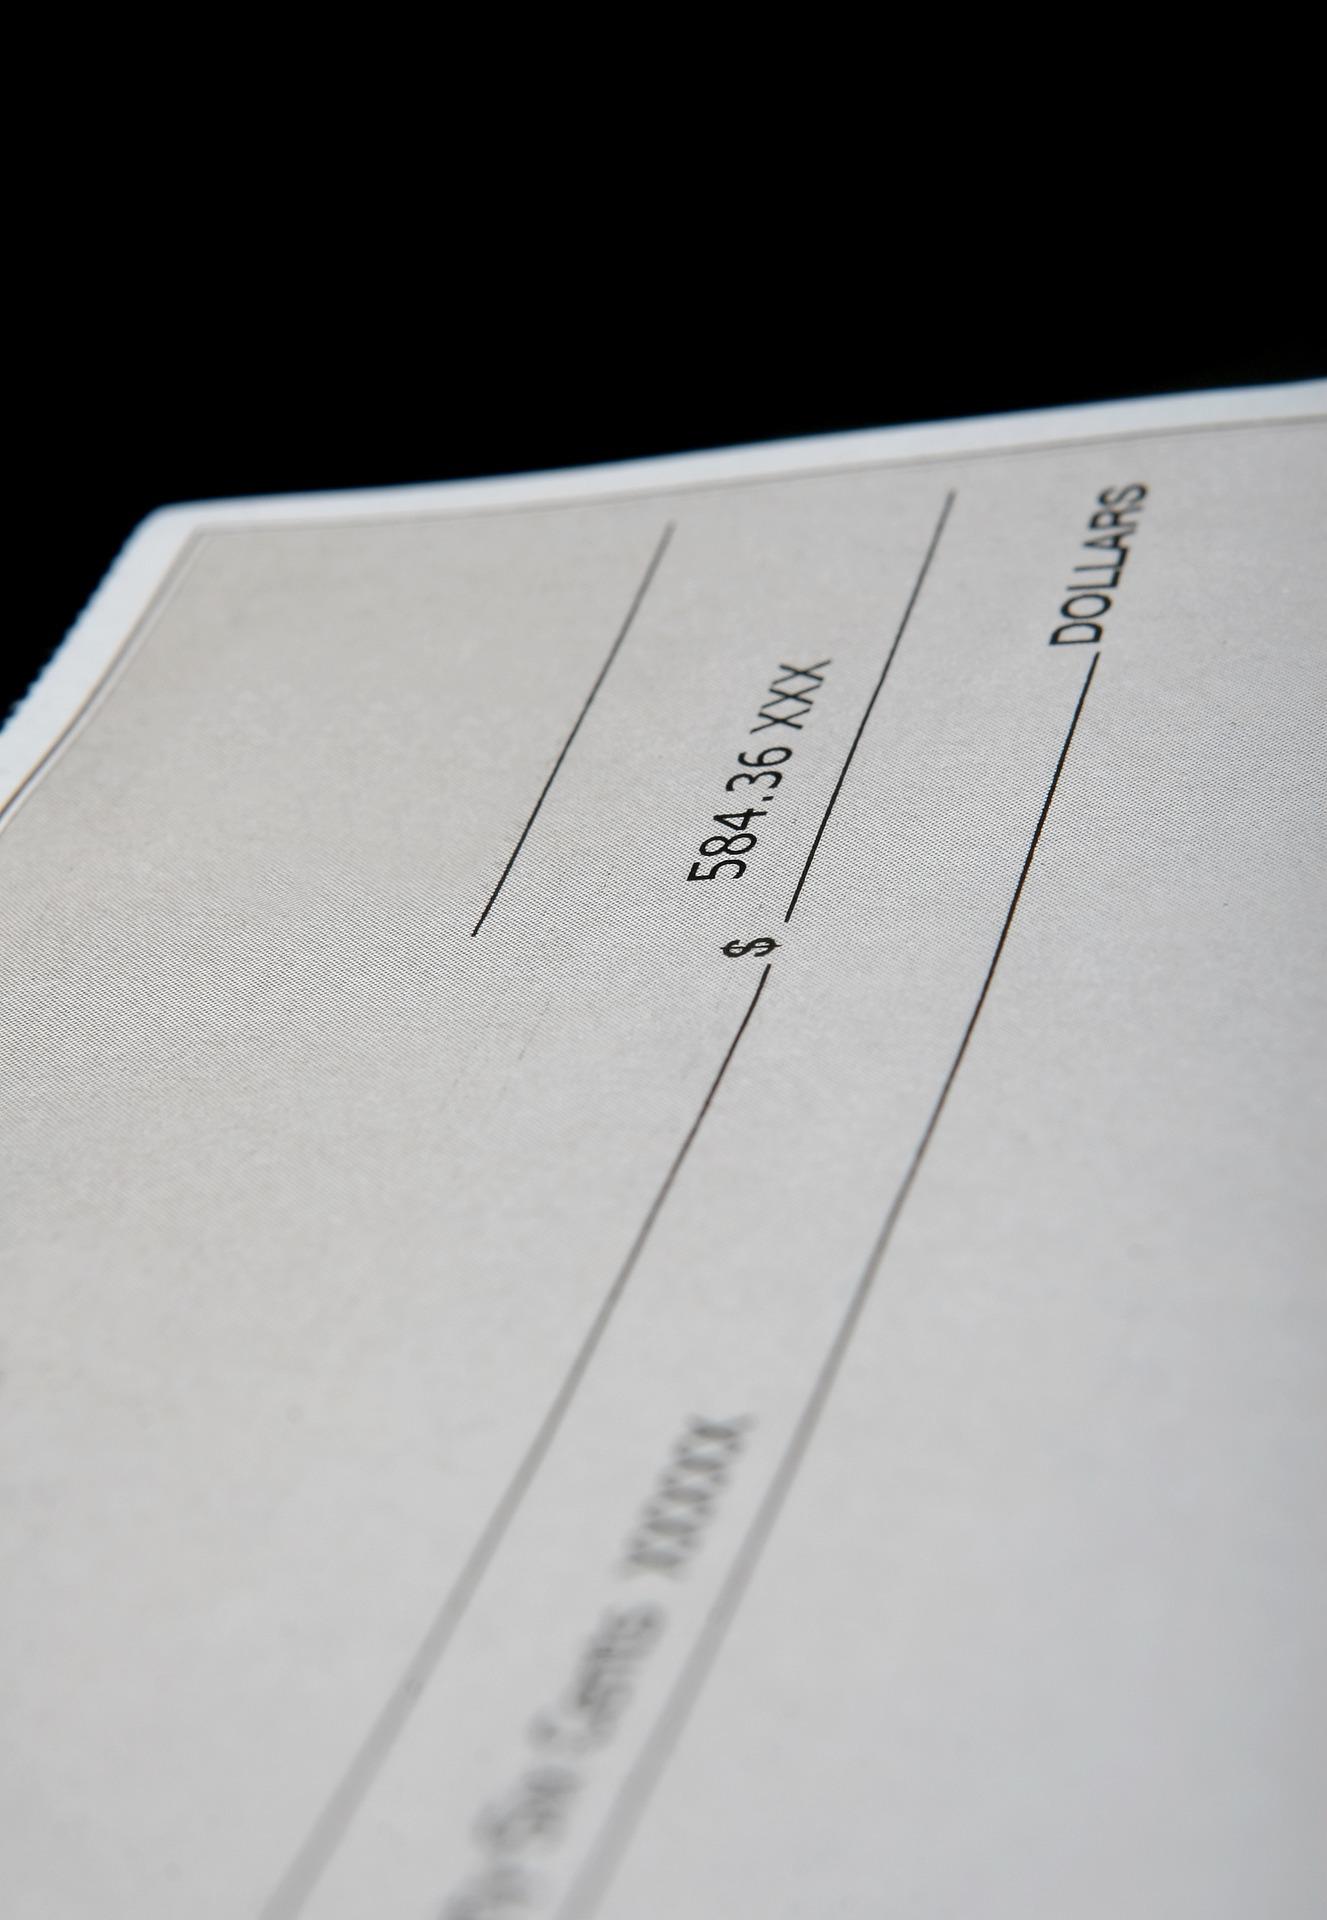 Close up of a payroll check